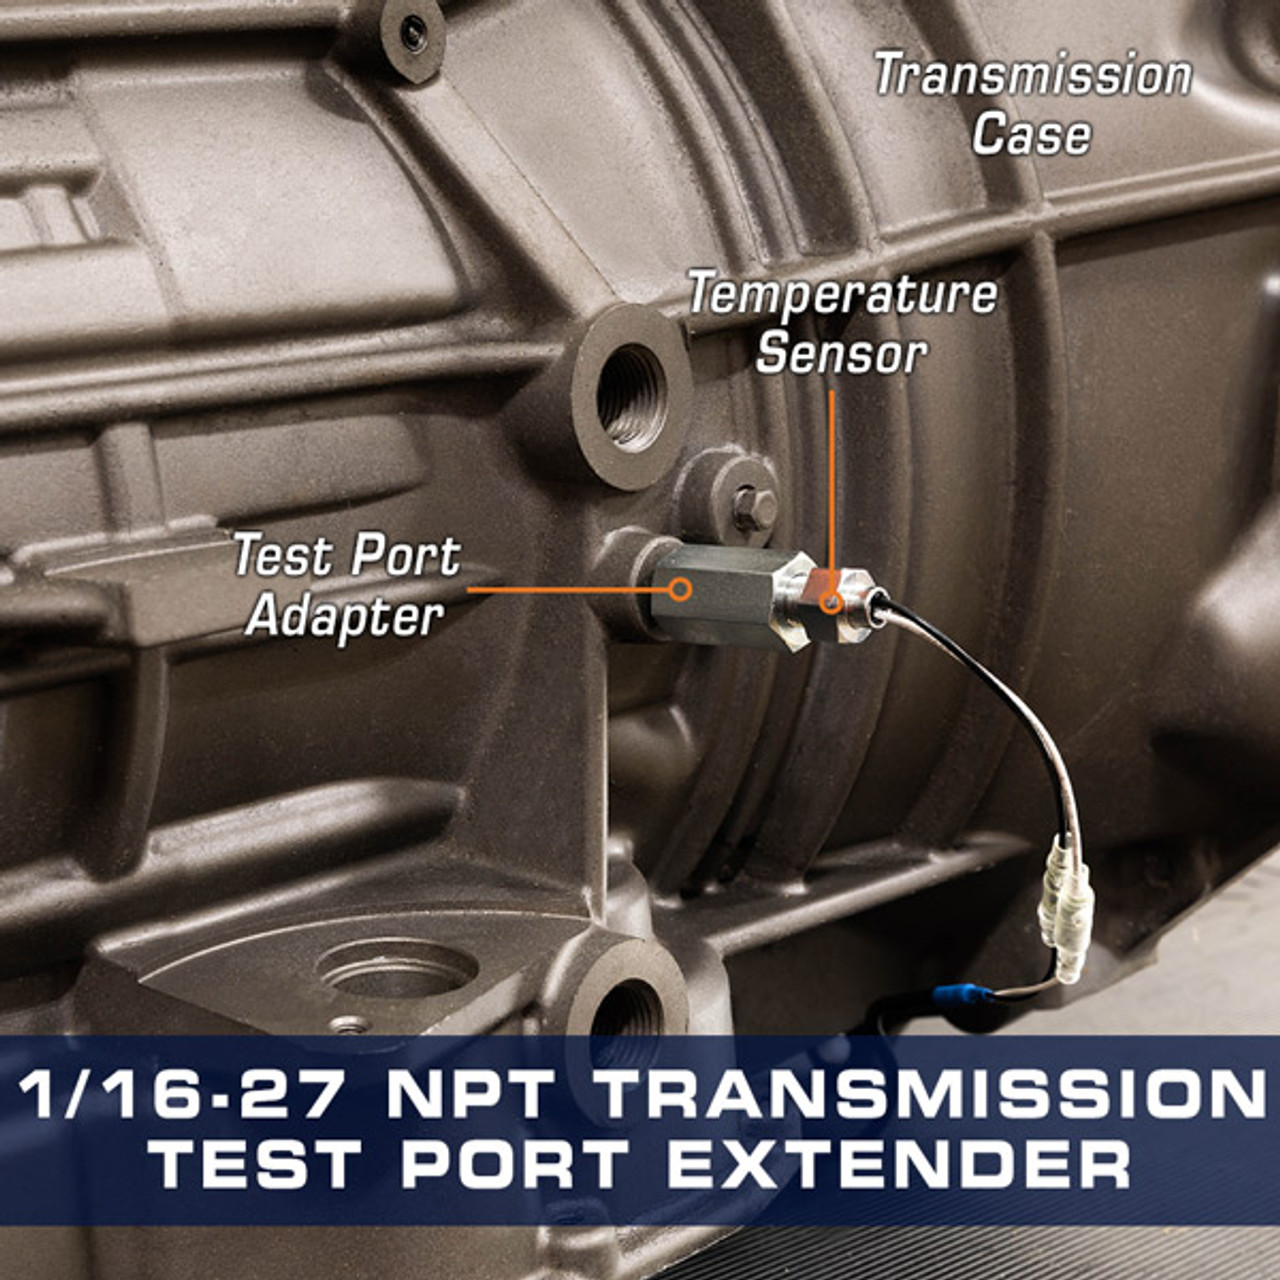 Transmission Test Port Extender